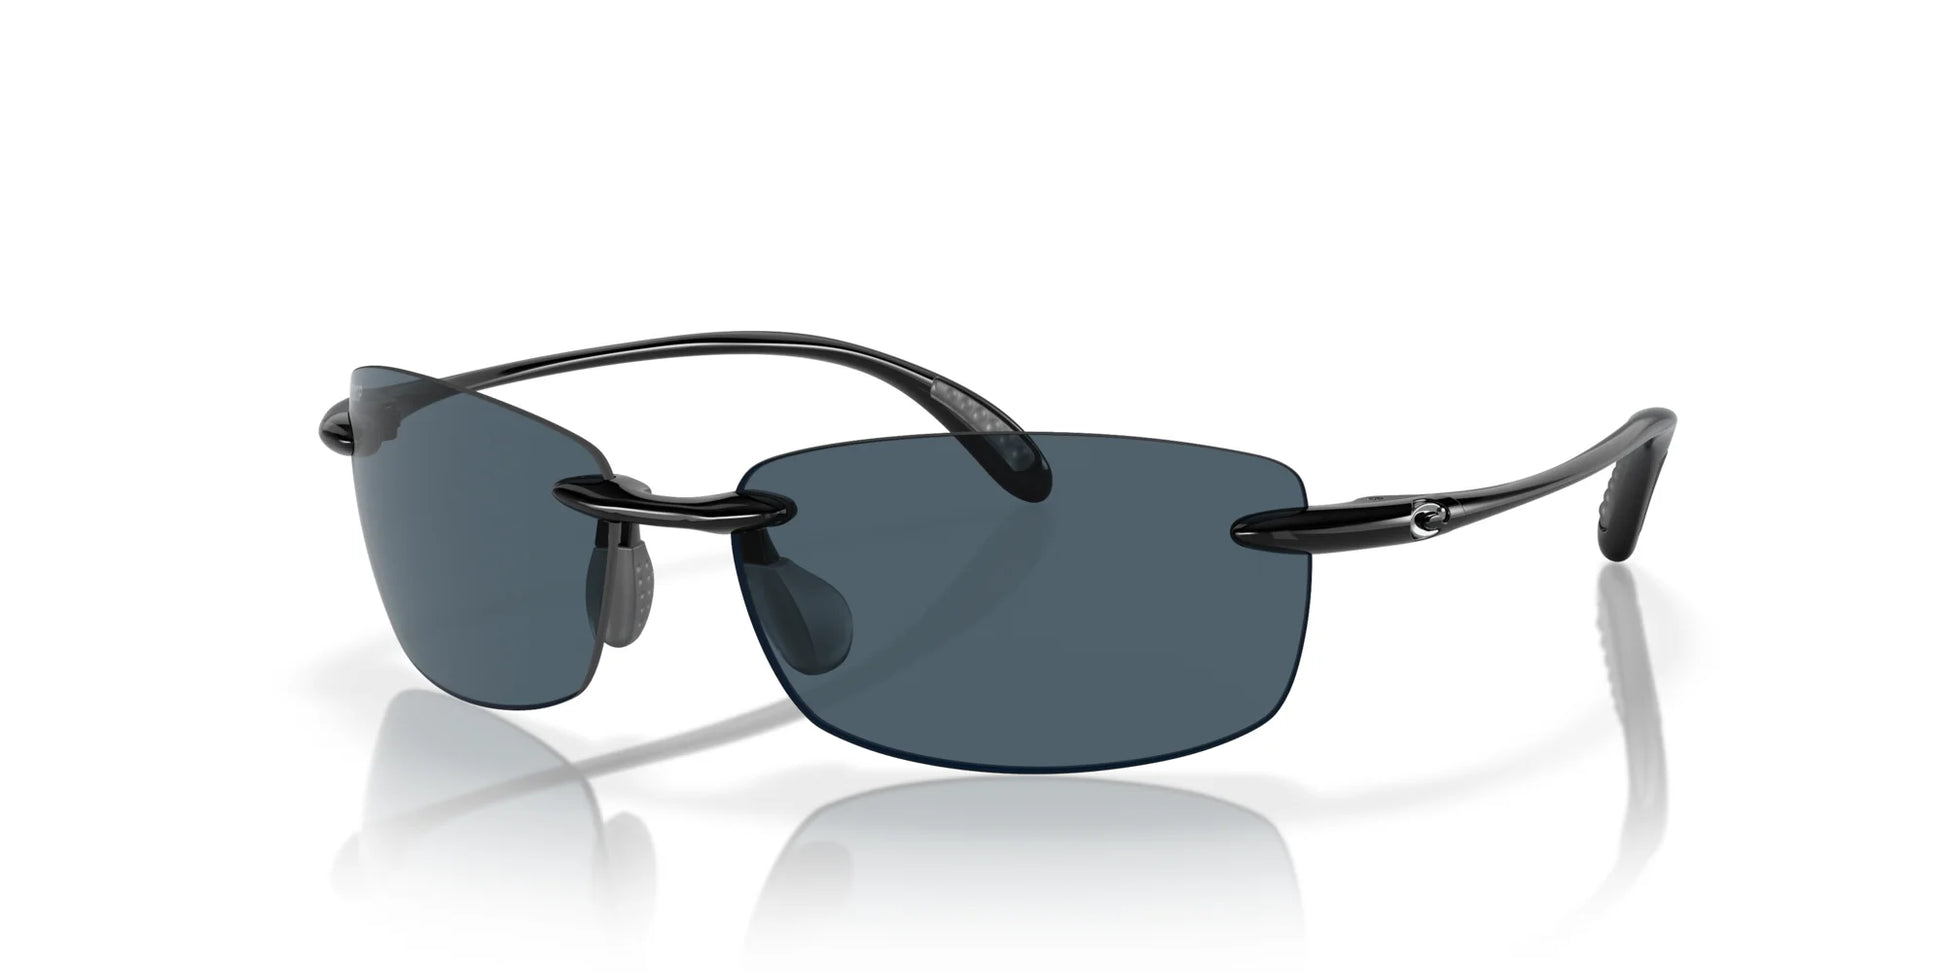 Costa BALLAST 6S9071 Sunglasses Shiny Black / Gray